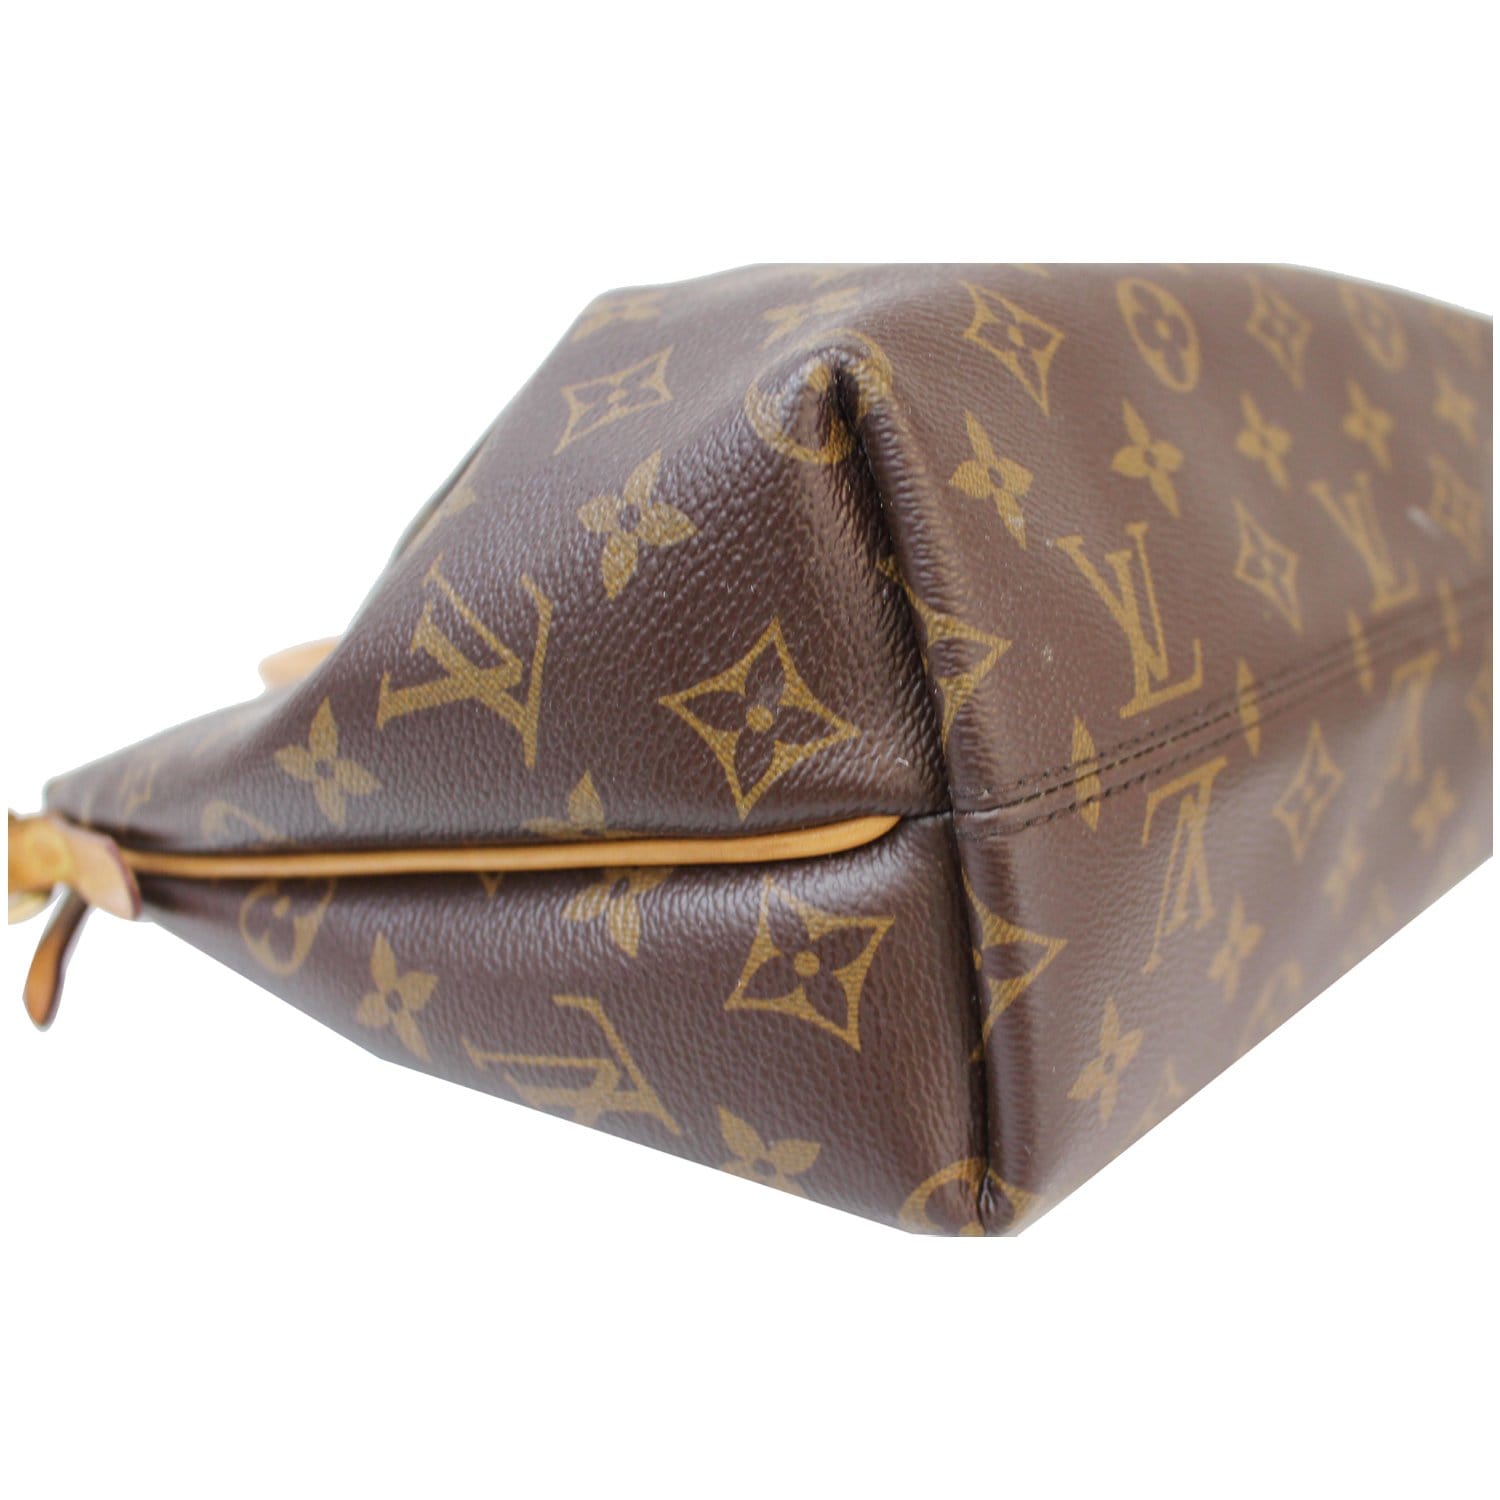 Turenne cloth handbag Louis Vuitton Brown in Cloth - 36586043